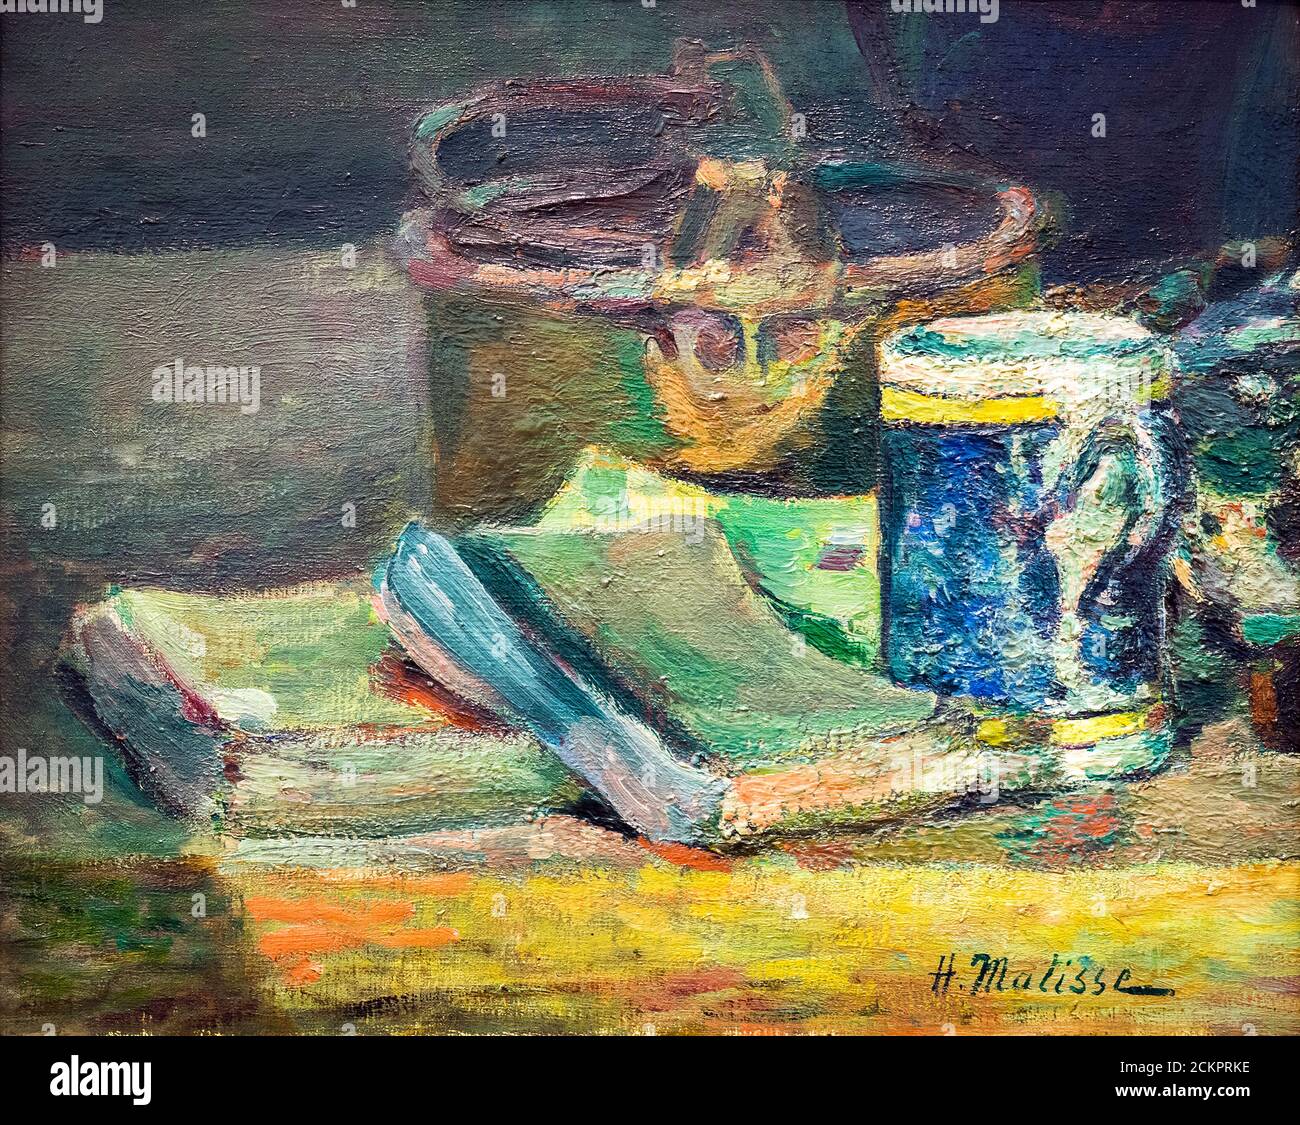 Natur morte avec livres (Stillleben mit Büchern) (c.1895) von Henri Matisse (1869-1954) Öl auf Leinwand Stockfoto